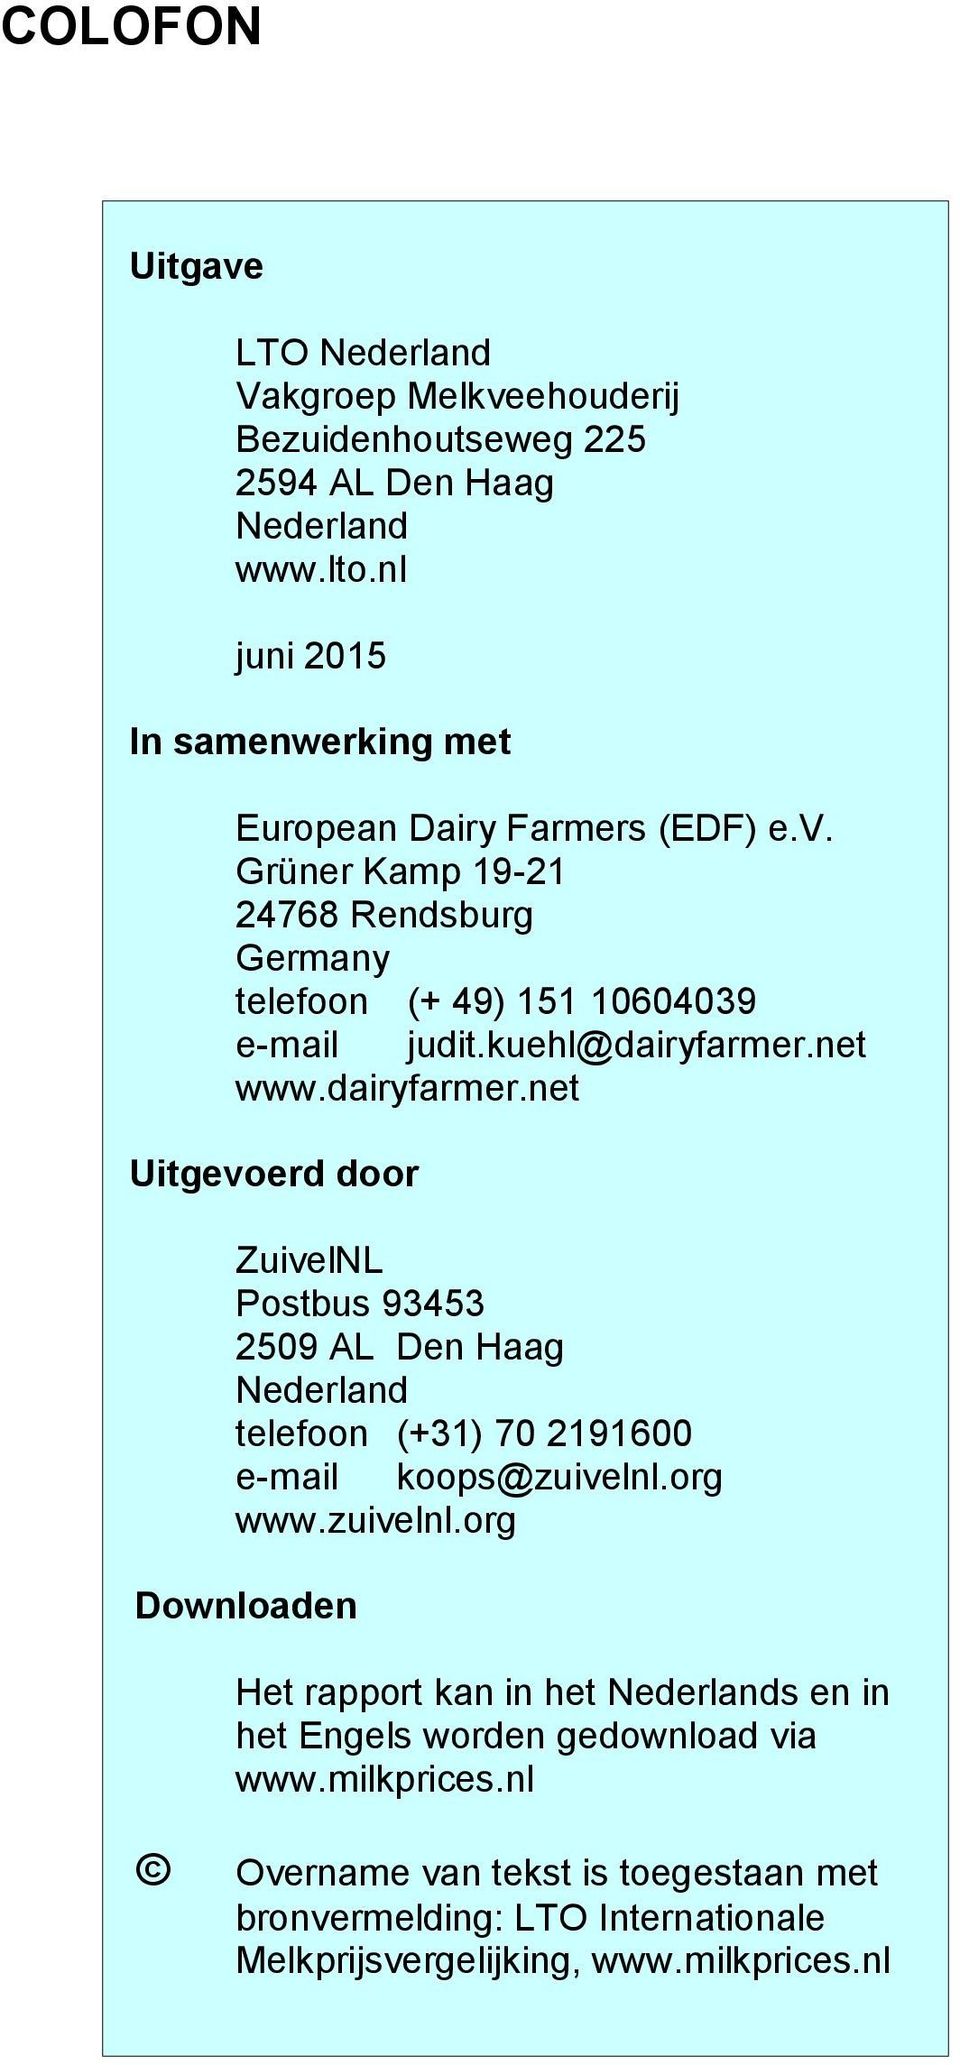 net www.dairyfarmer.net Uitgevoerd door ZuivelNL Postbus 93453 2509 AL Den Haag Nederland telefoon (+31) 70 2191600 e-mail koops@zuivelnl.